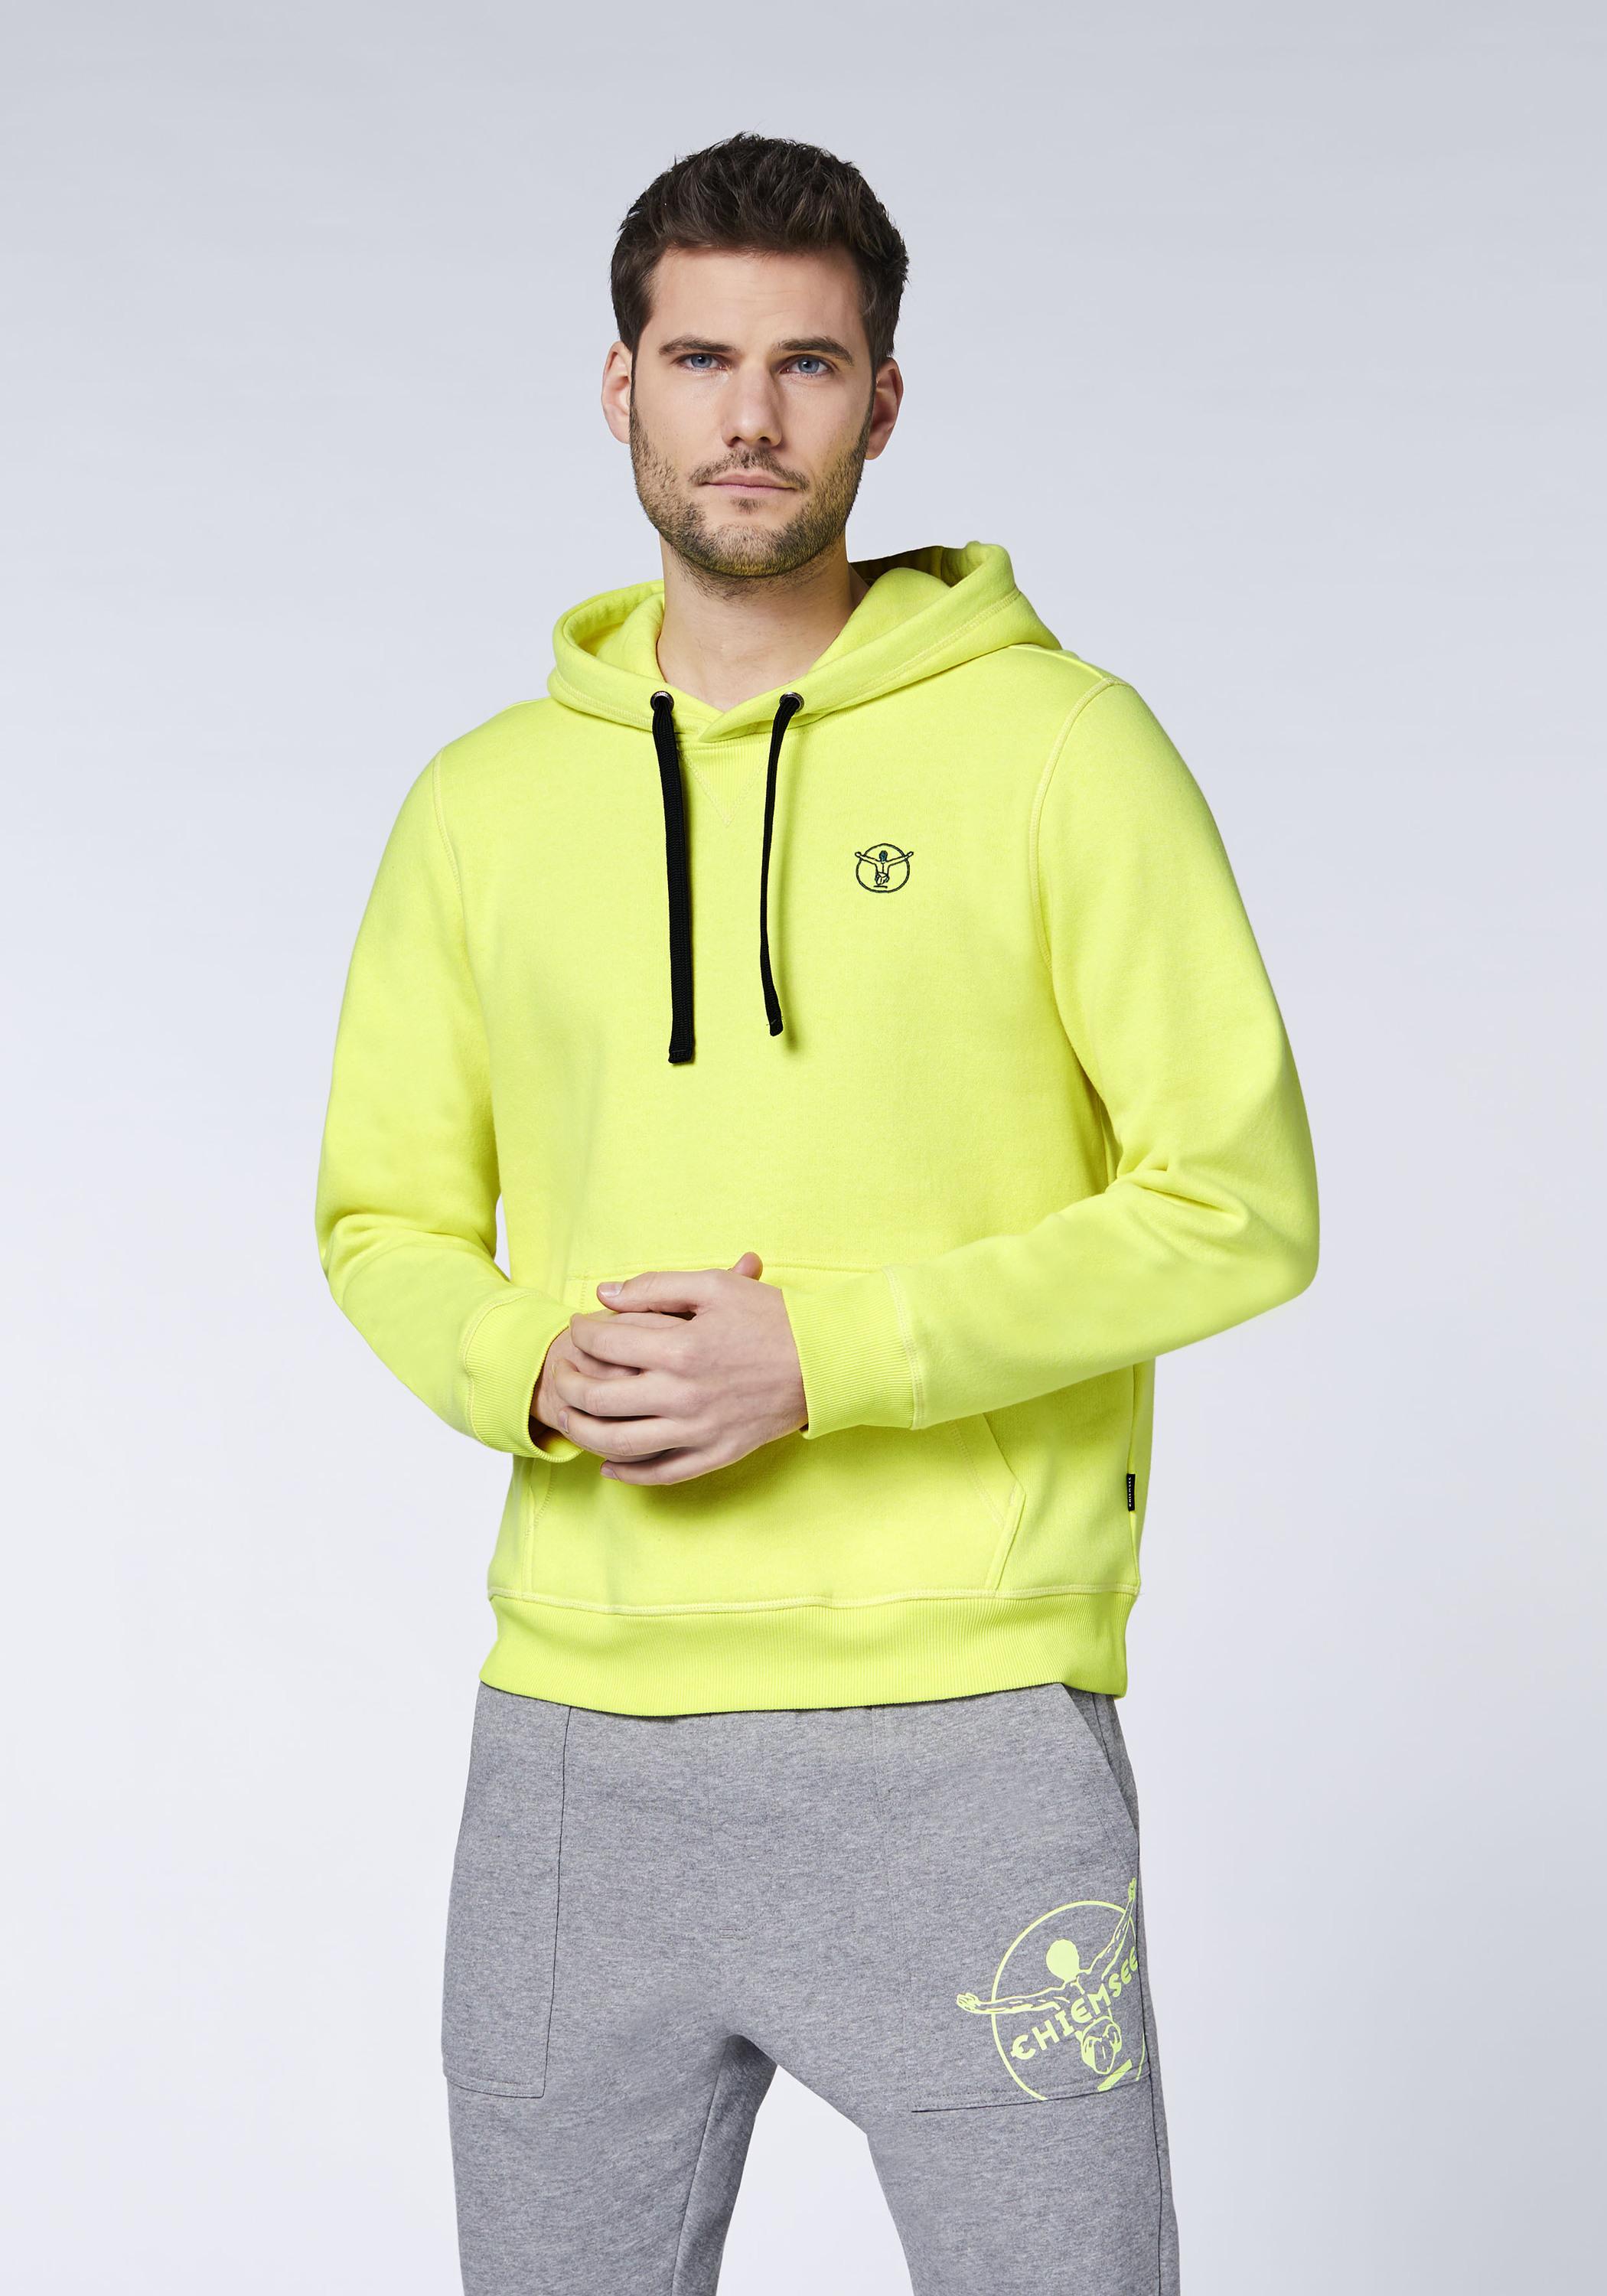 Herren SportScheck Sweatshirt von im kaufen Safety Kapuzensweatshirt Chiemsee Shop Online Yellow